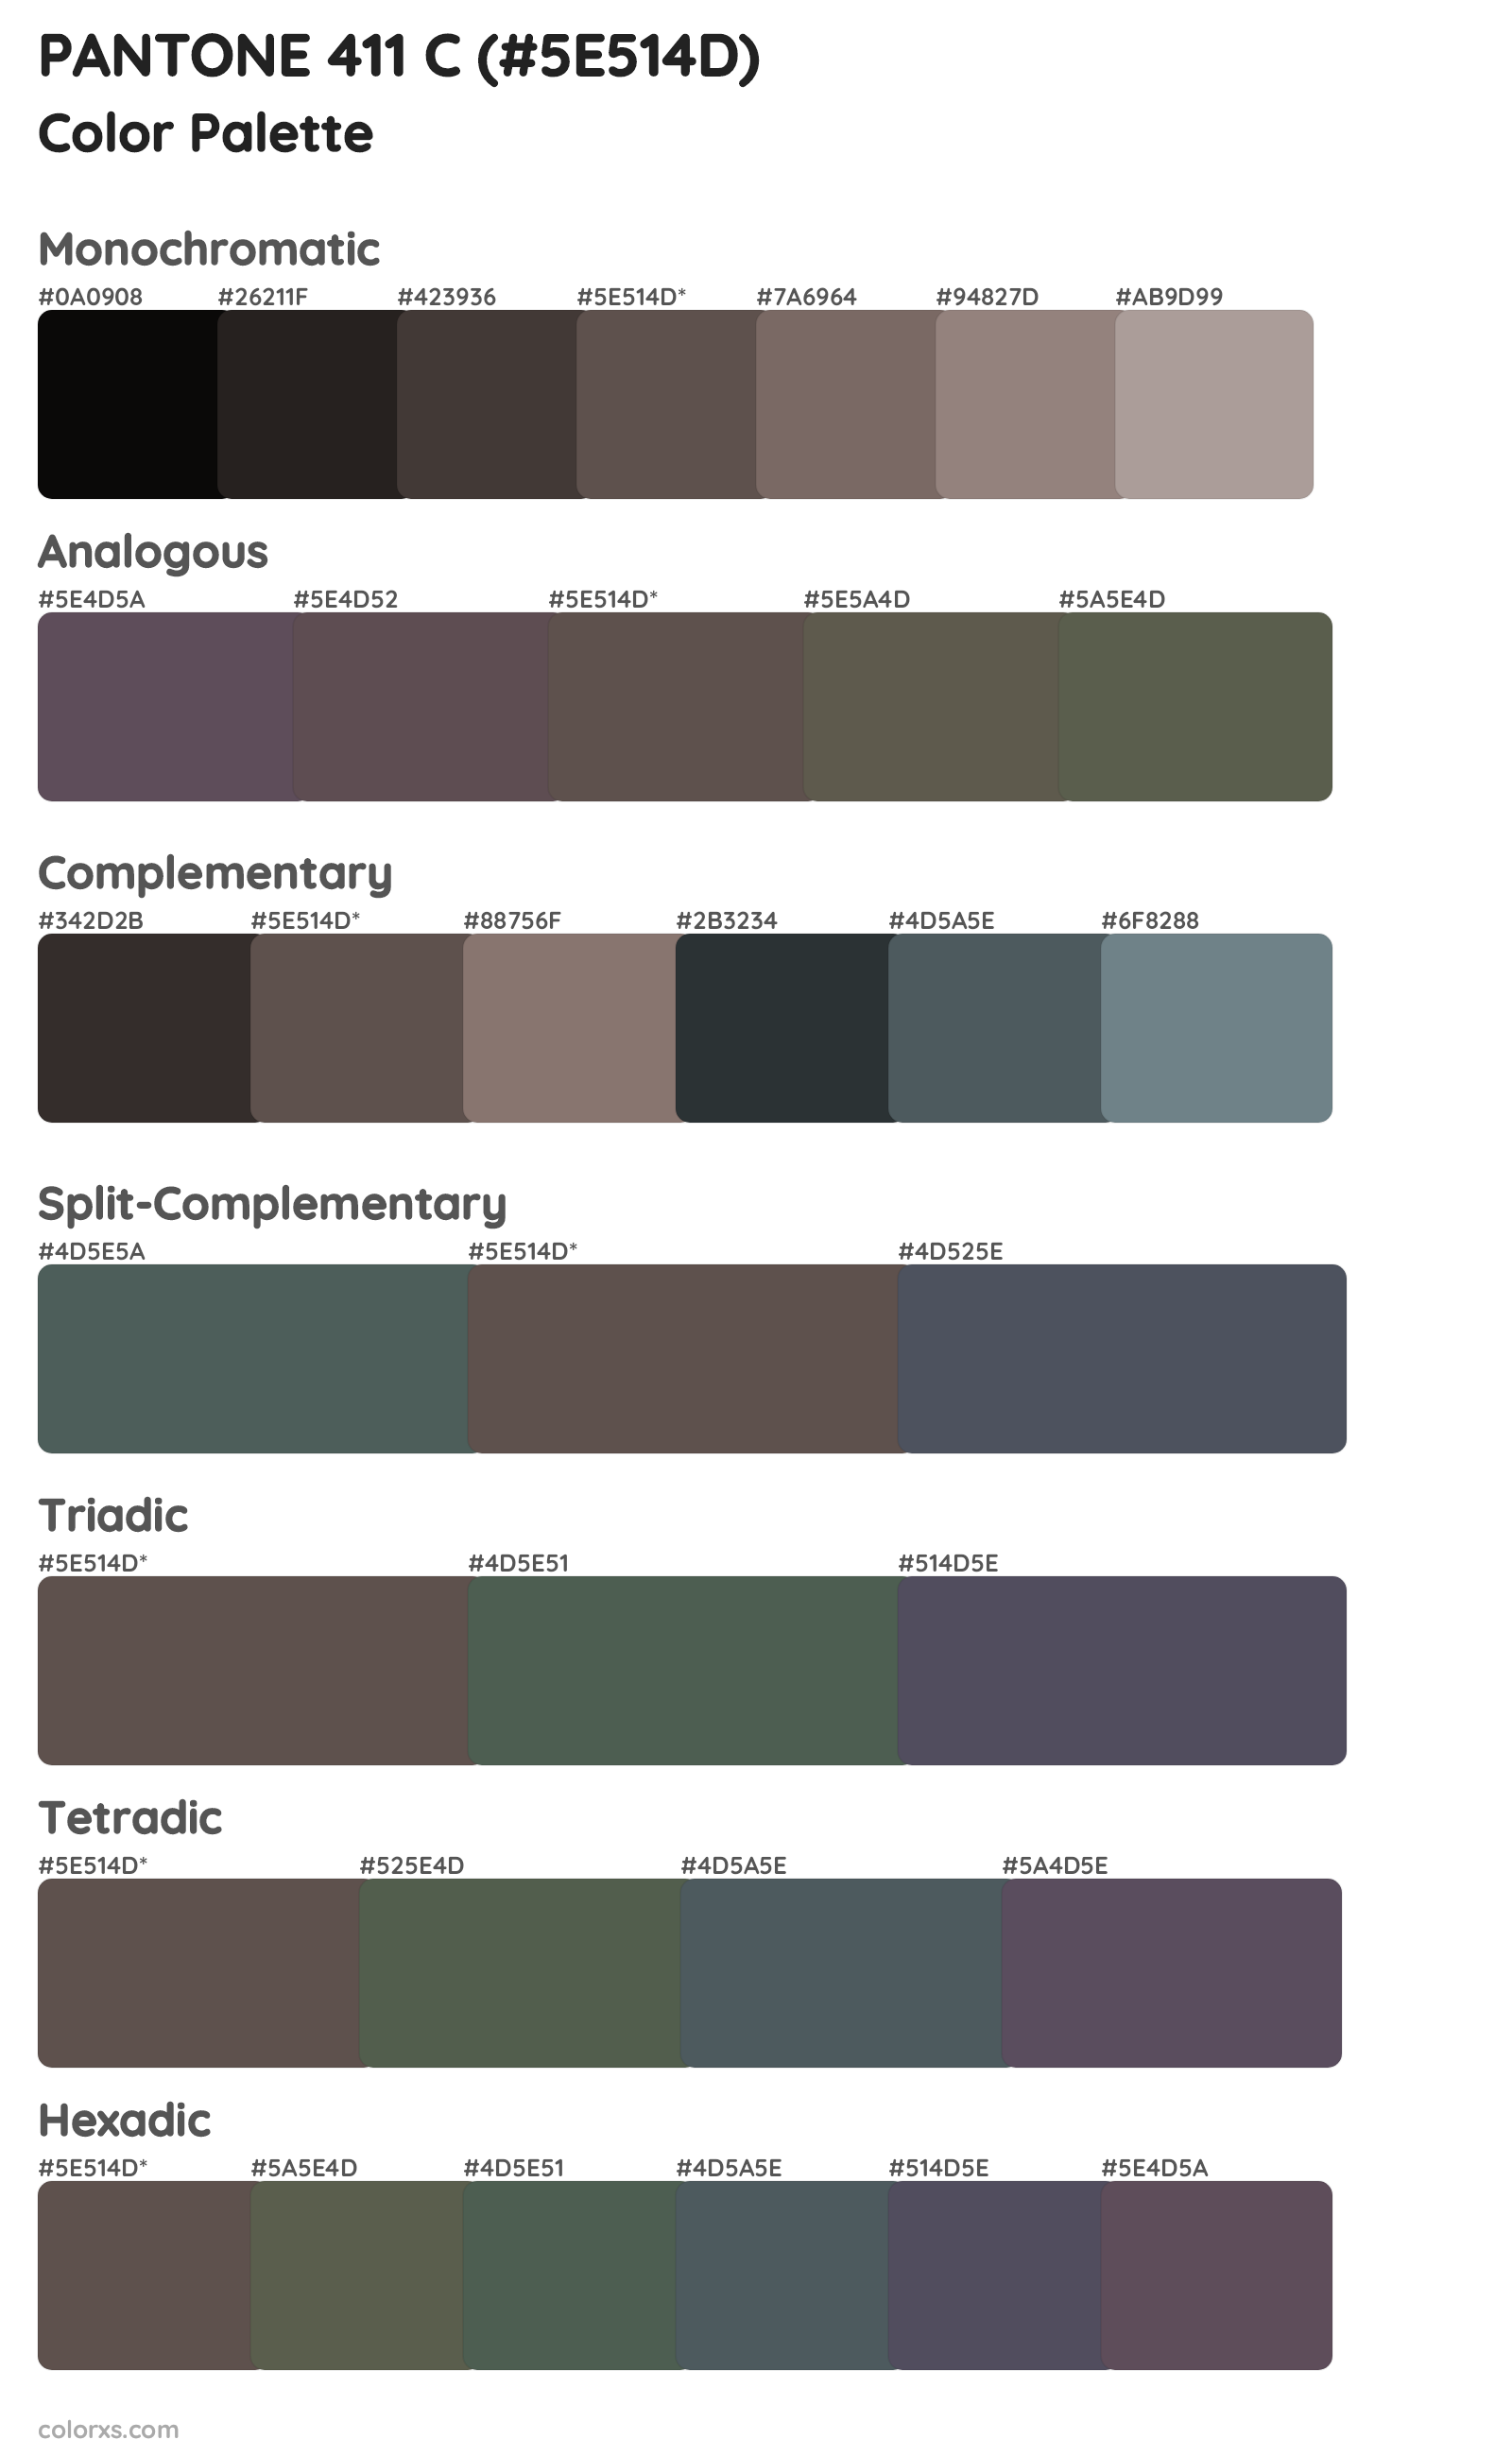 PANTONE 411 C Color Scheme Palettes